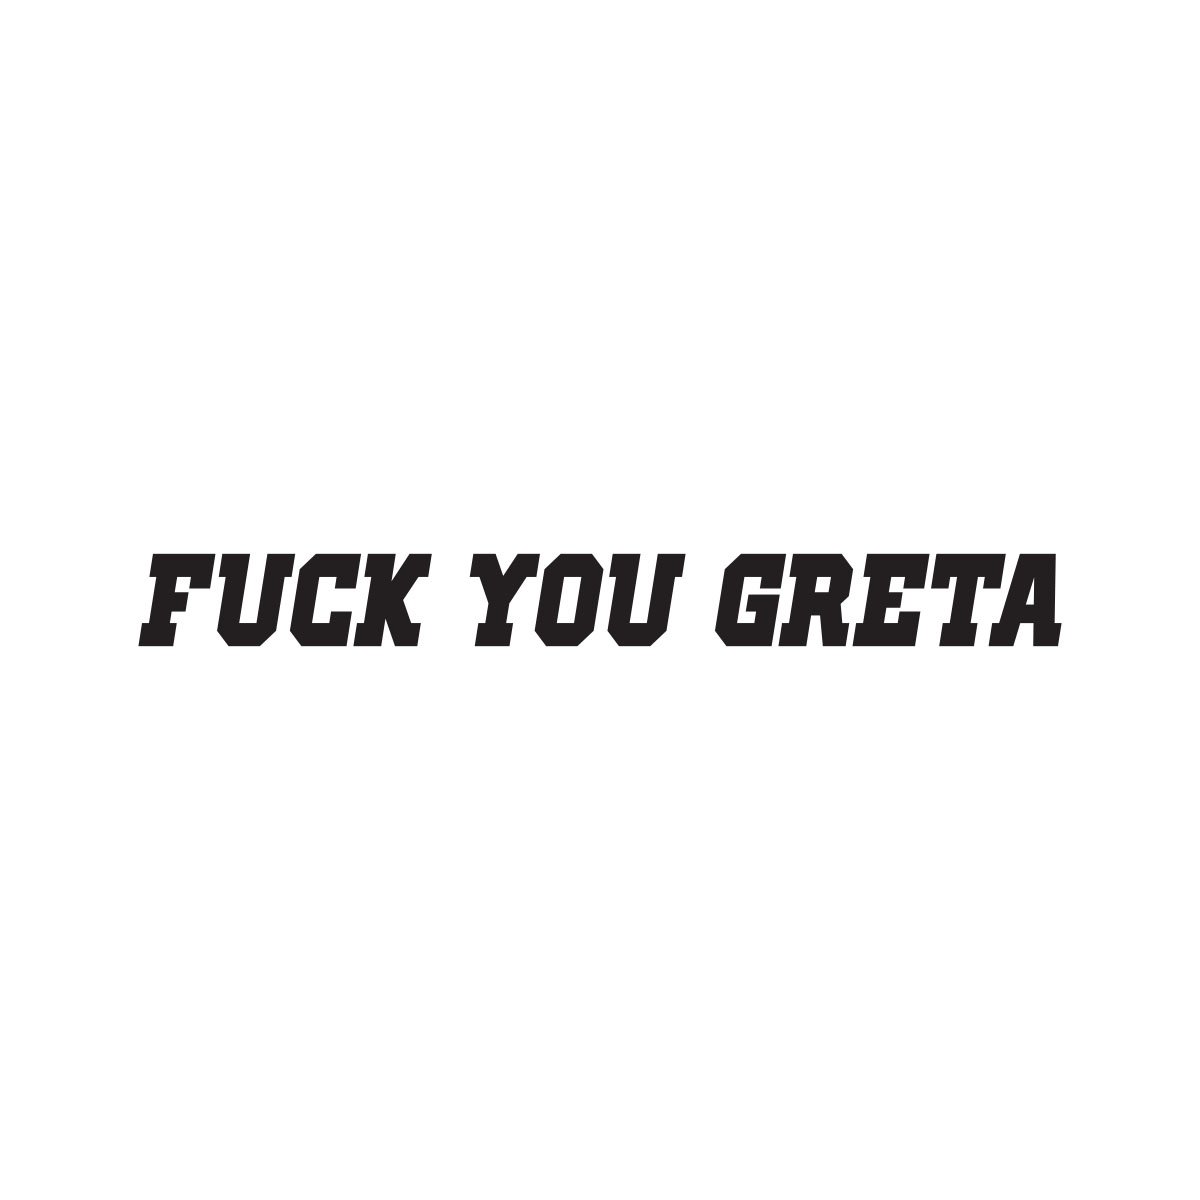 FUCK YOU GRETA